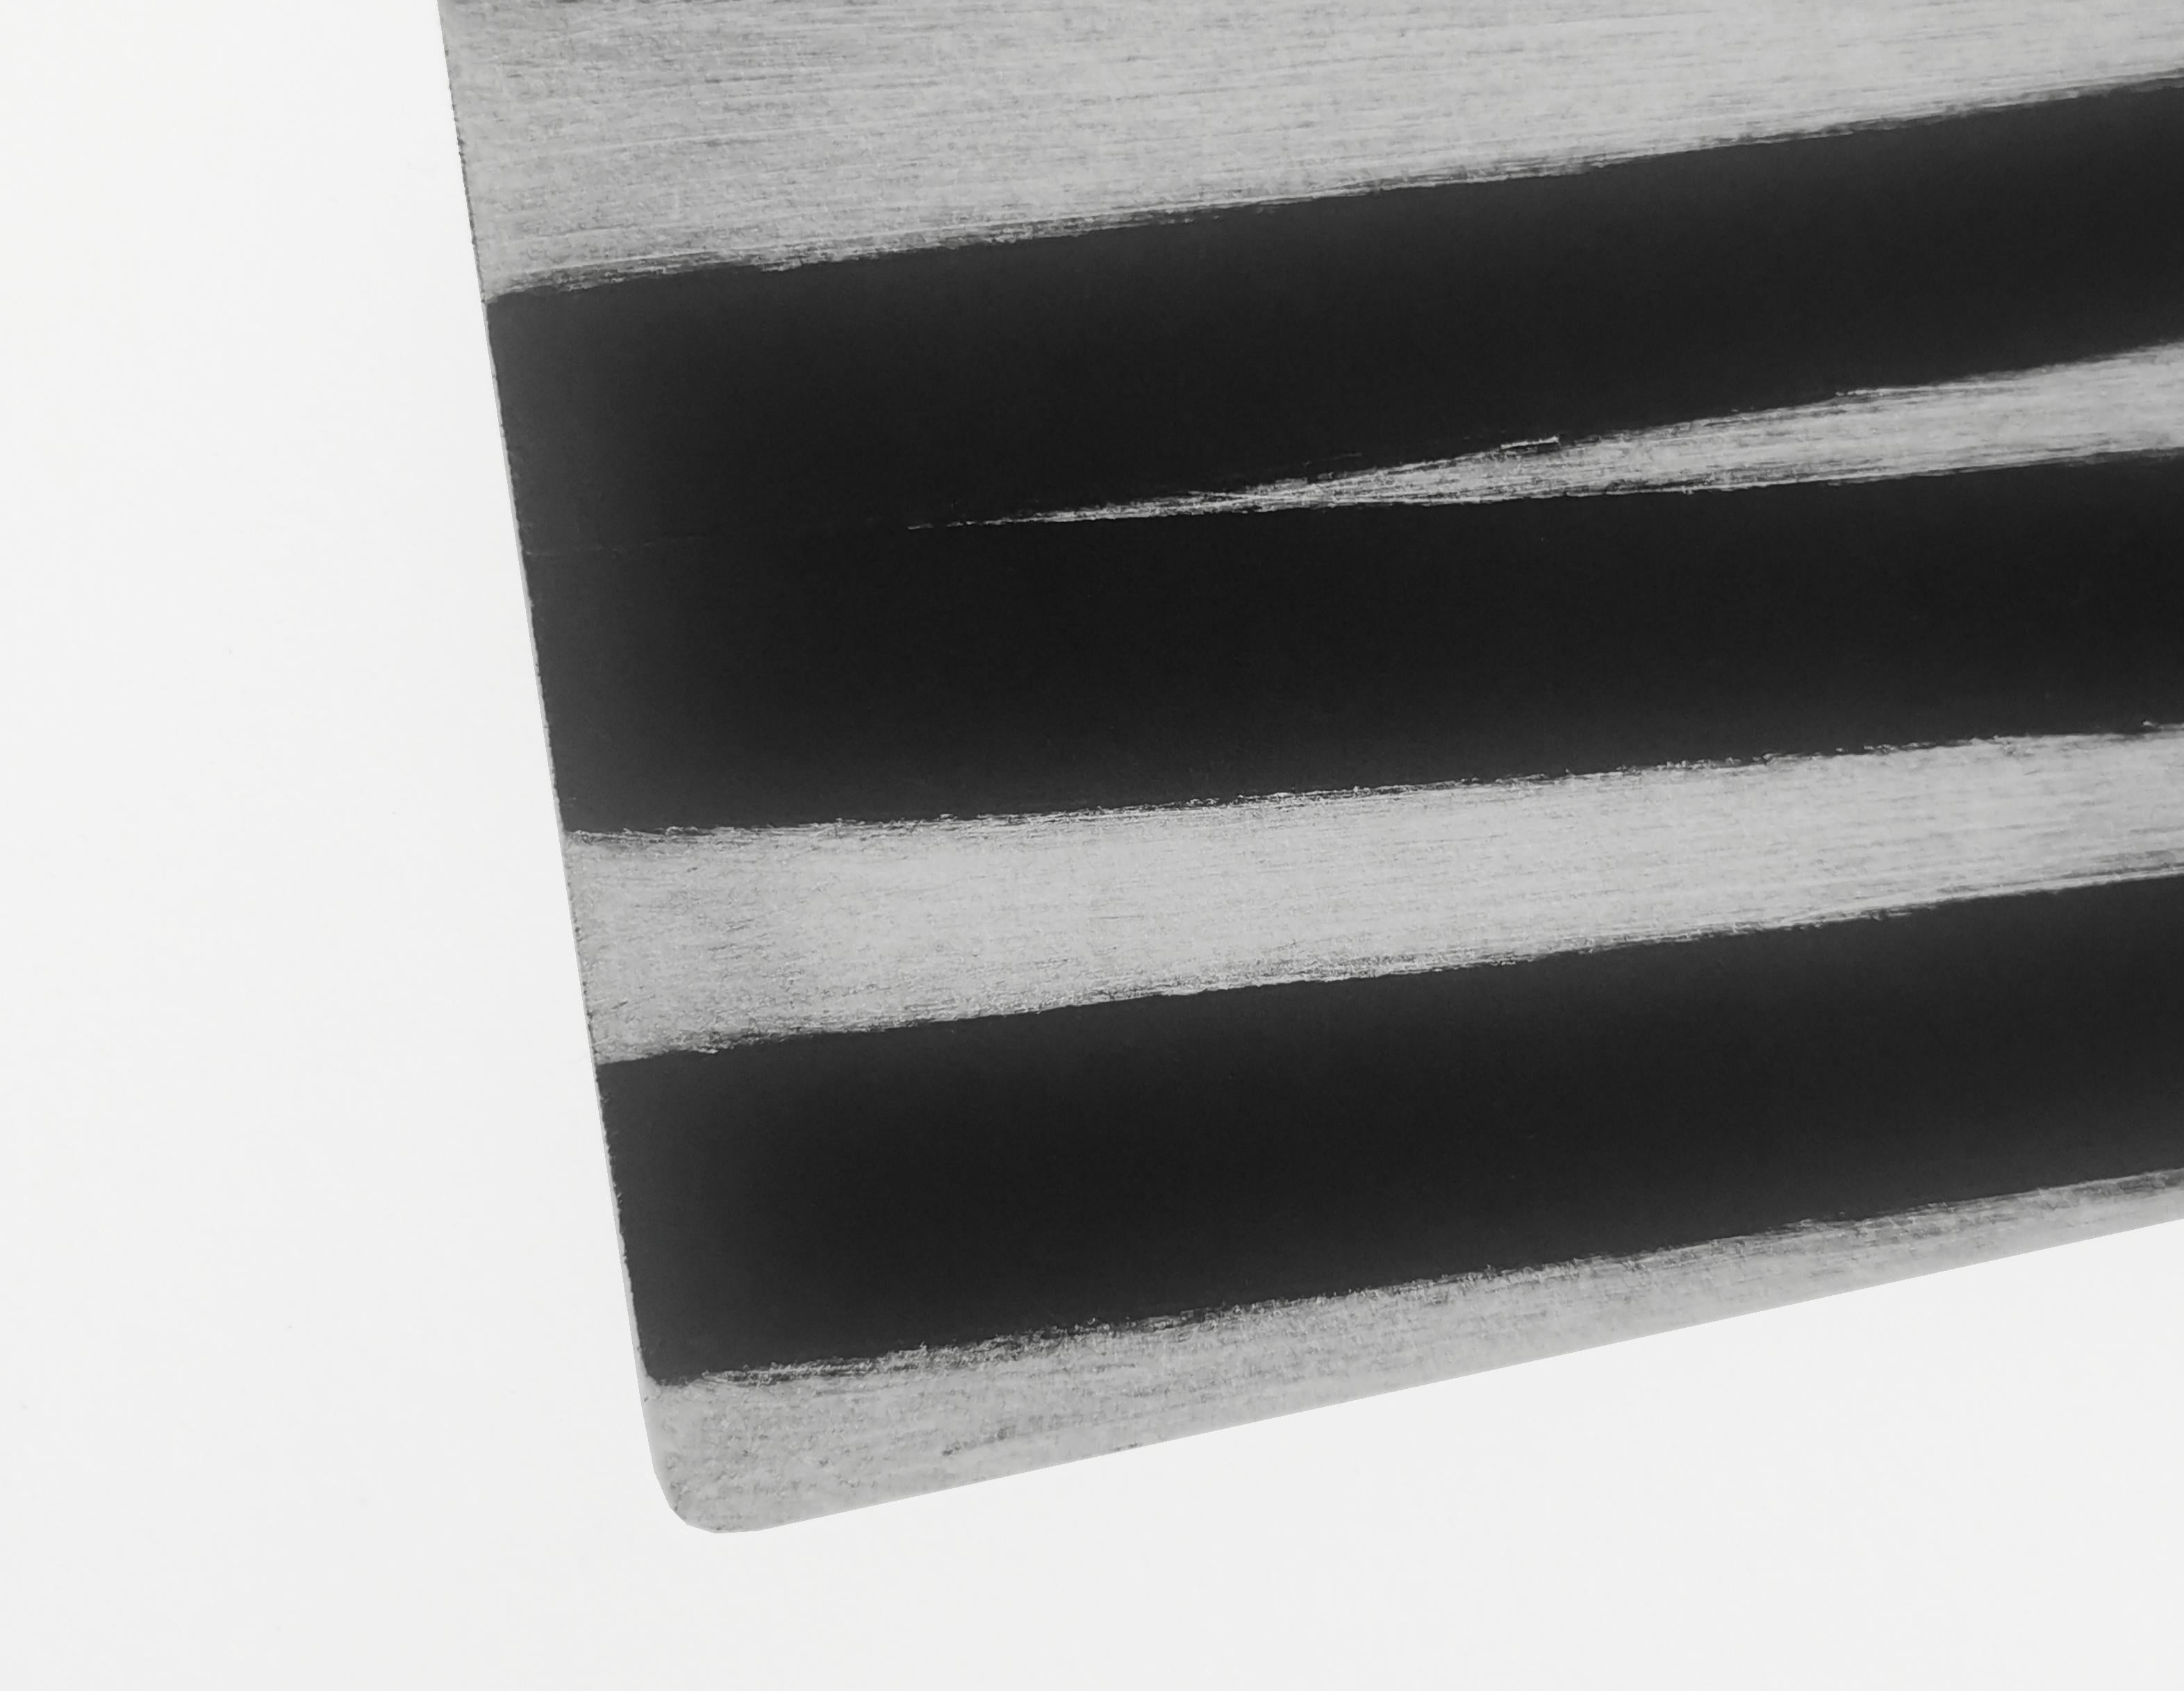 XXII 41 074 (Abstrakter Druck)

Carborundum auf gedrucktem Zink auf BFK Rives Papier 250 g/m2

Ausgabe 1/15

Pierre Muckensturm hat 2010 die Druckgrafik in sein Schaffen aufgenommen.

Das Gravur- und Druckverfahren ermöglicht es ihm, seine